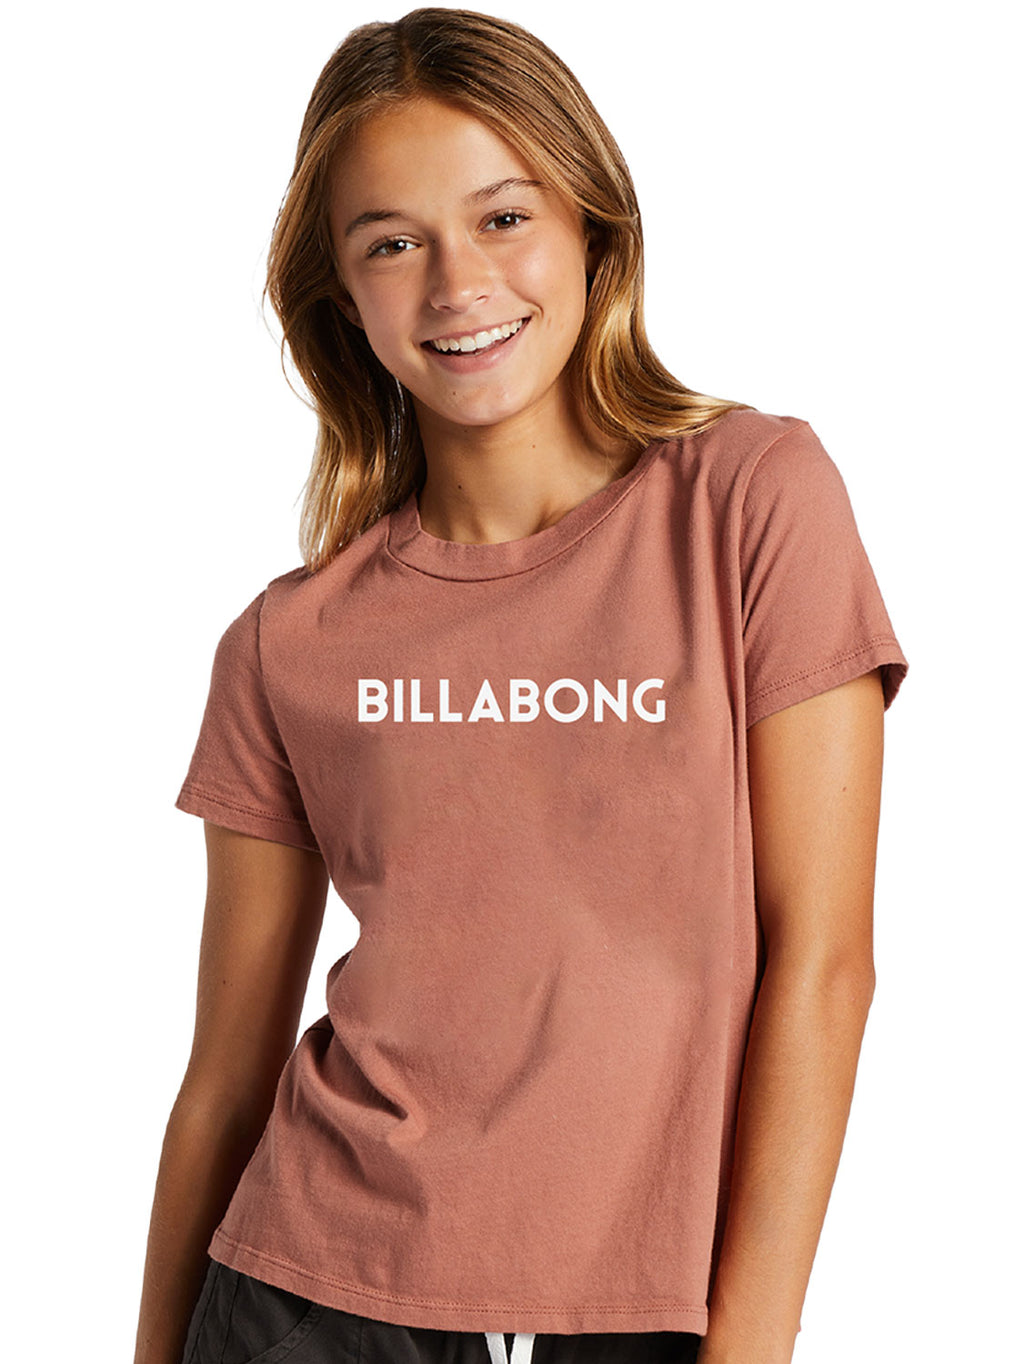 Billabong - Pre Girls Dancer T Shirt